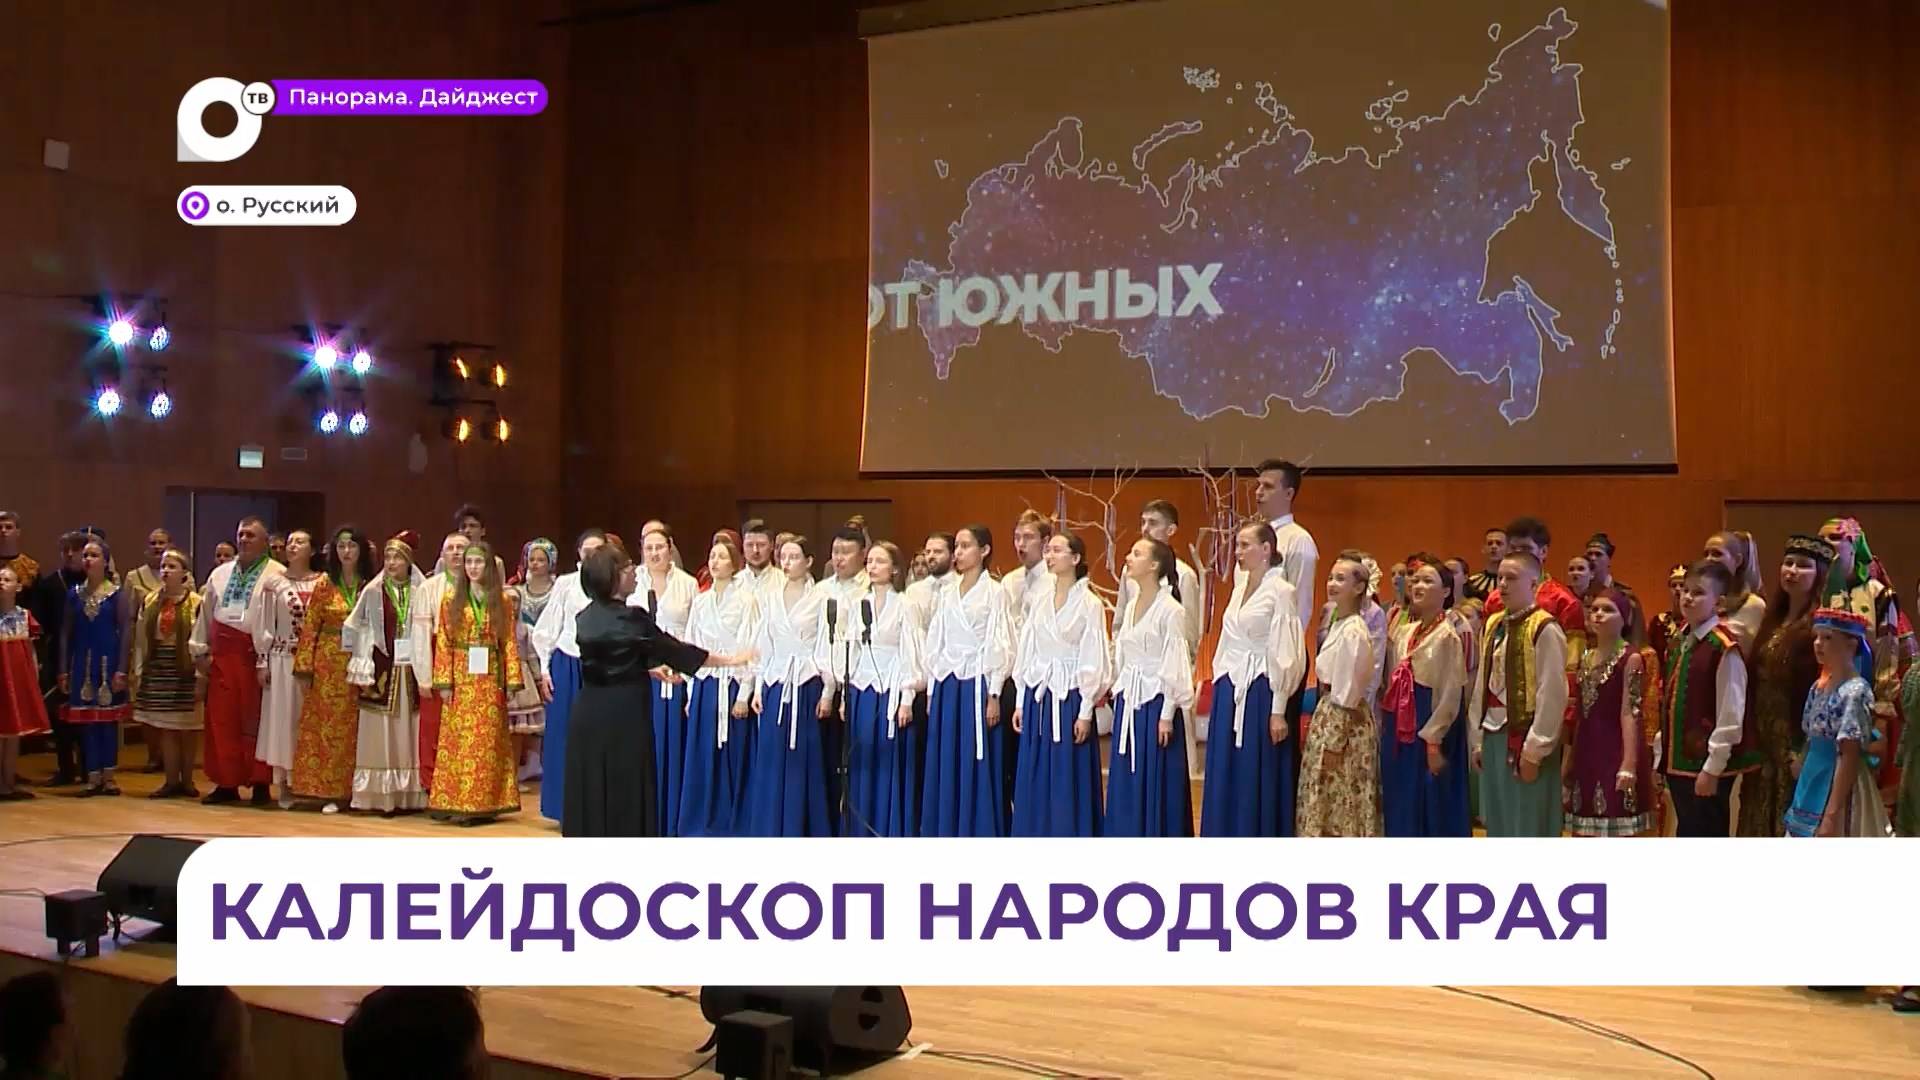 Конгресс народов Приморья собрал на Русском острове более 50 национальных организаций